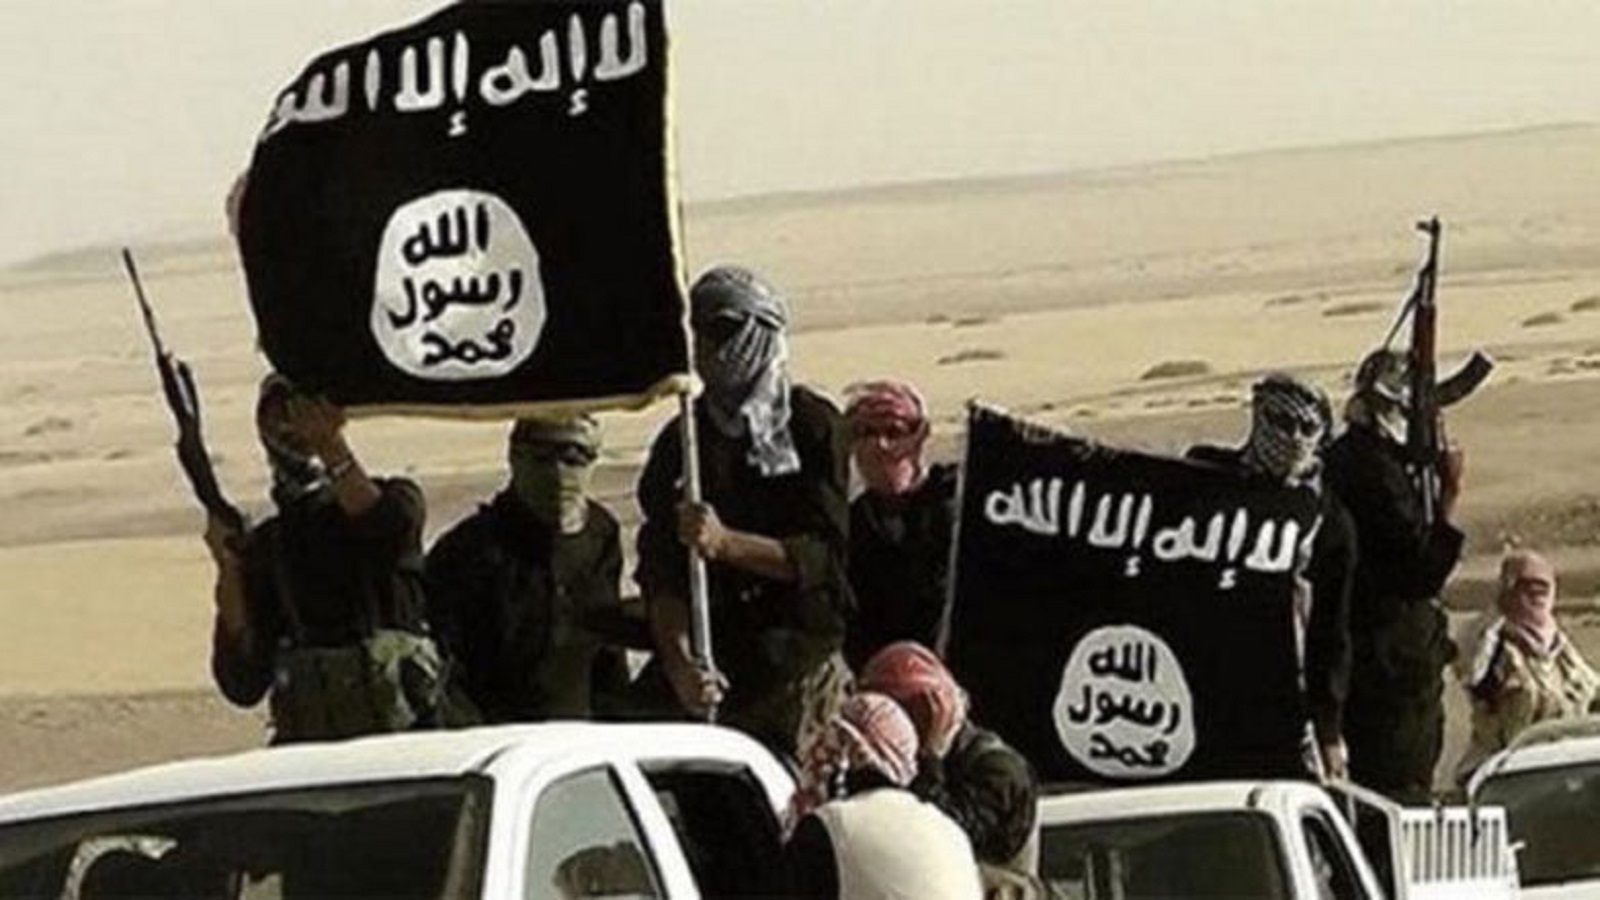 النظام يصادر إنجاز زعيم "داعش".. وأميركا تمنعه